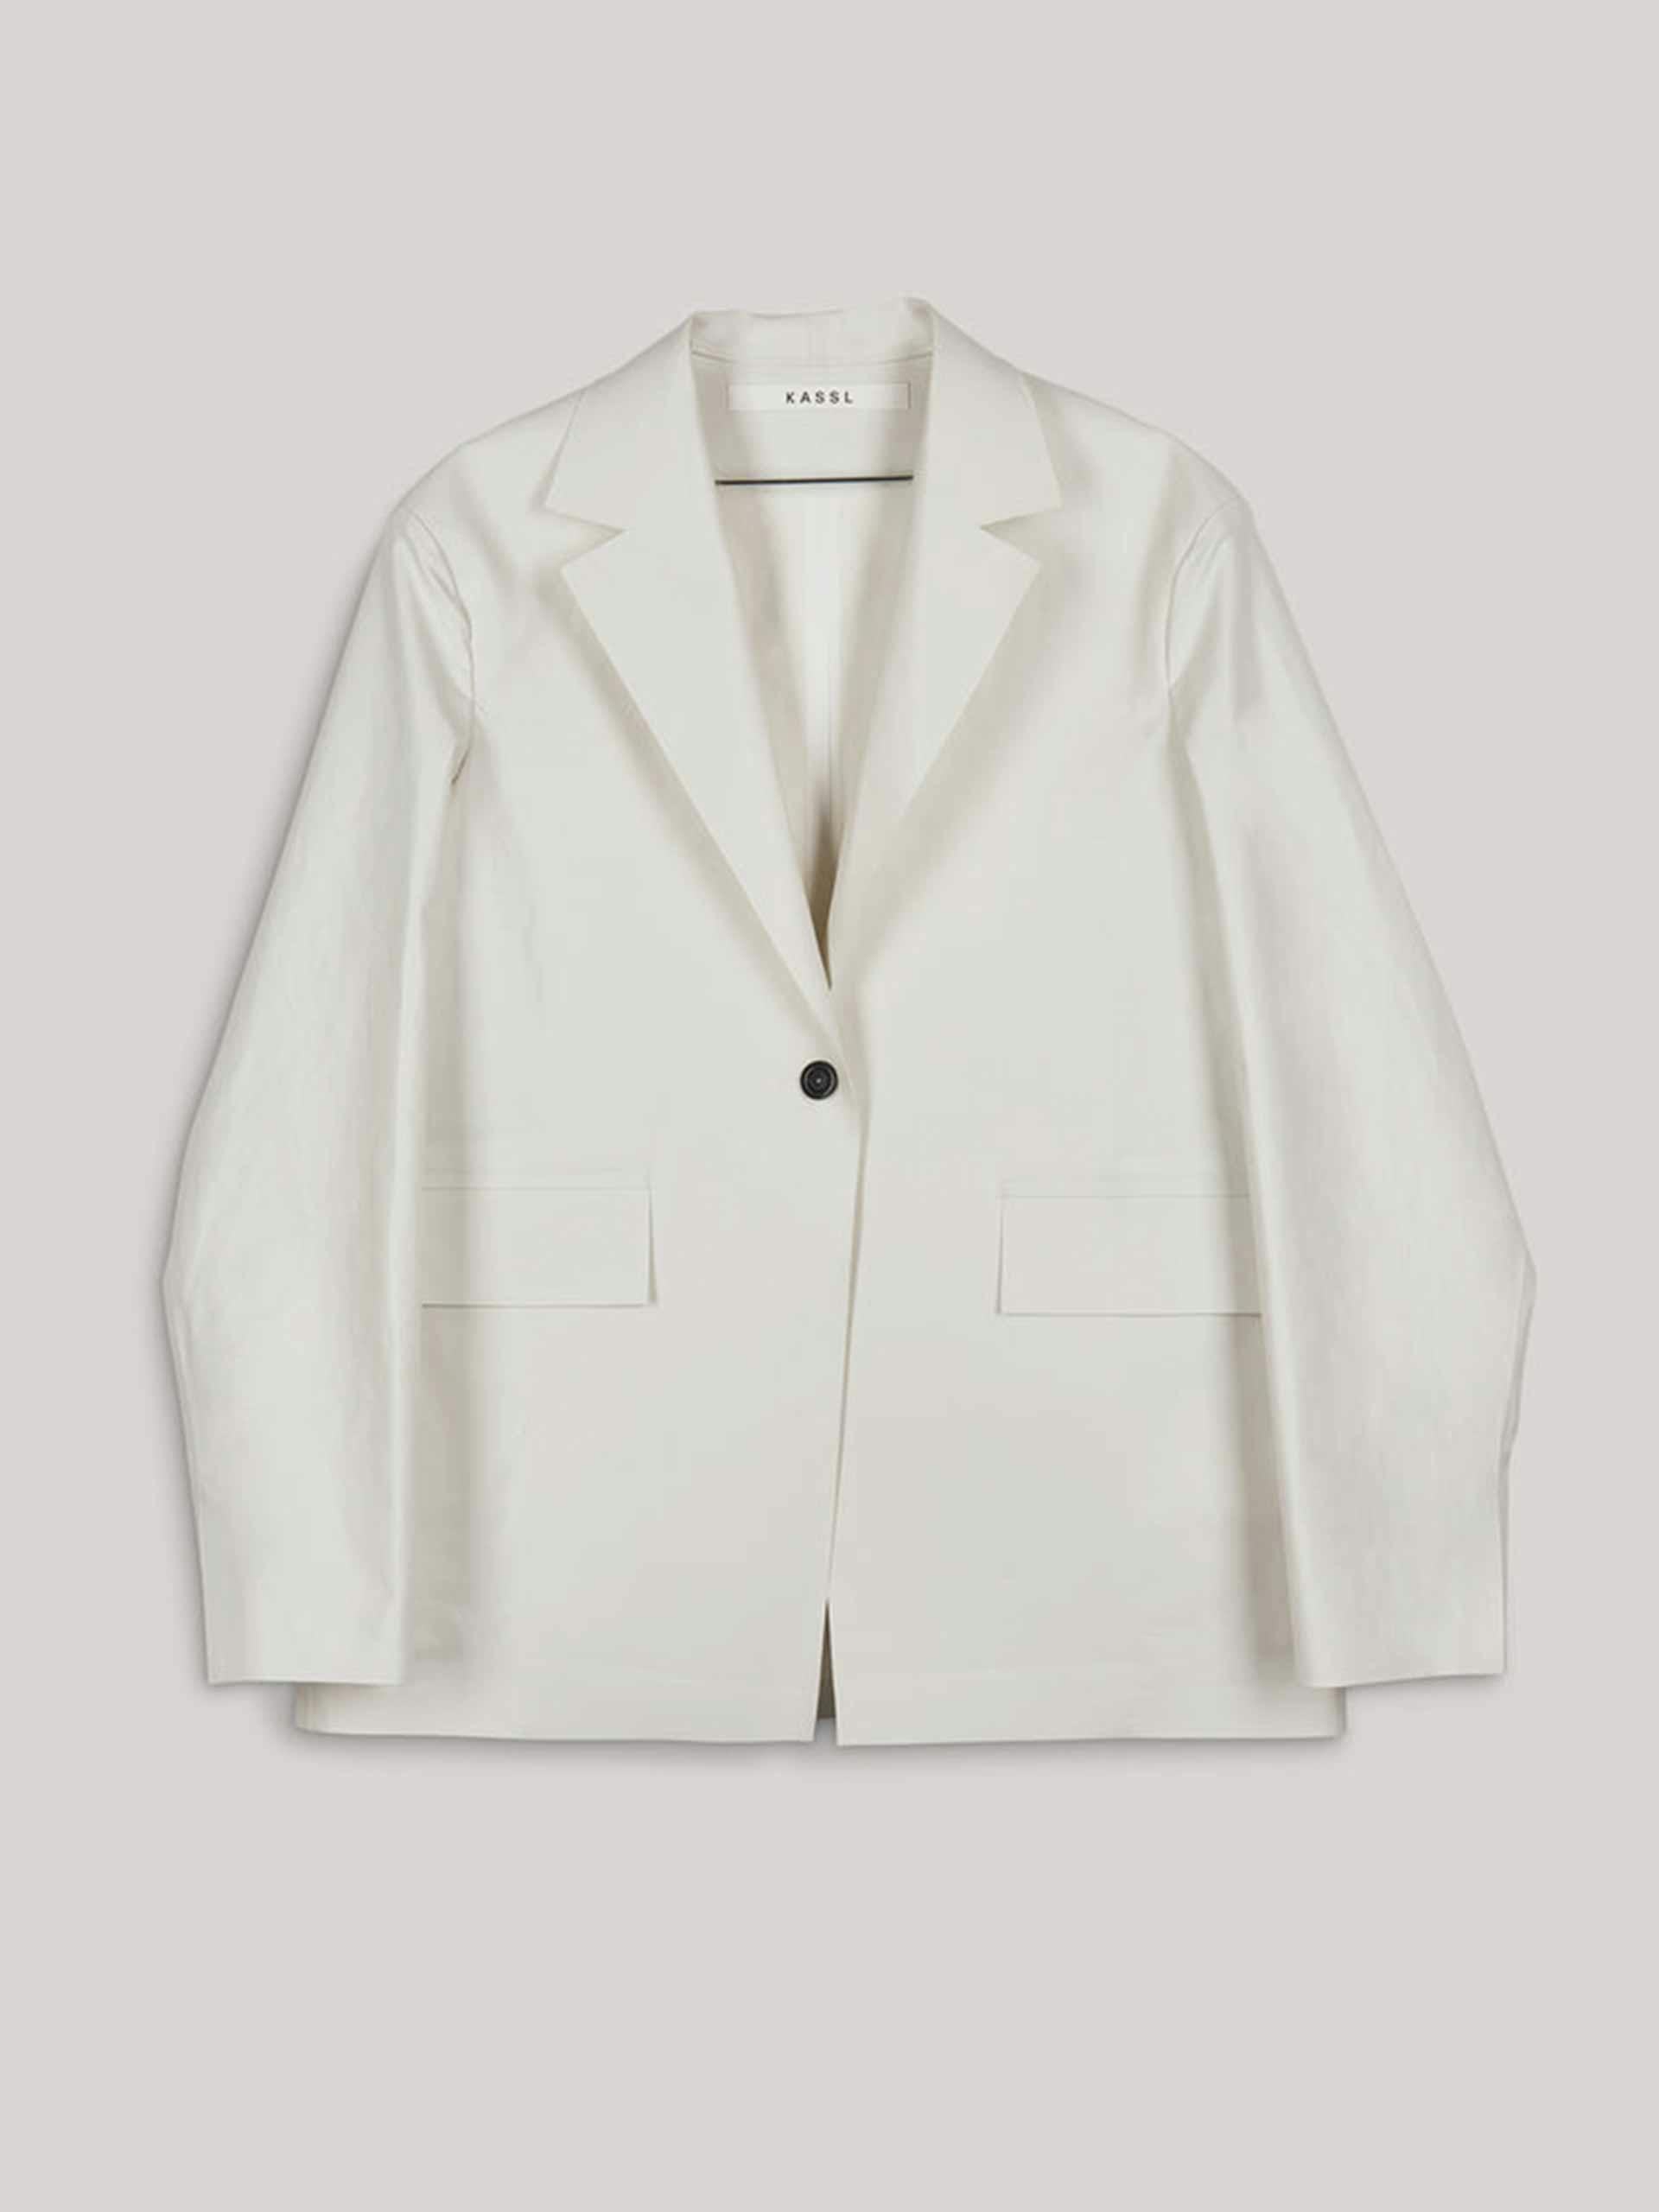 White oil coated blazer